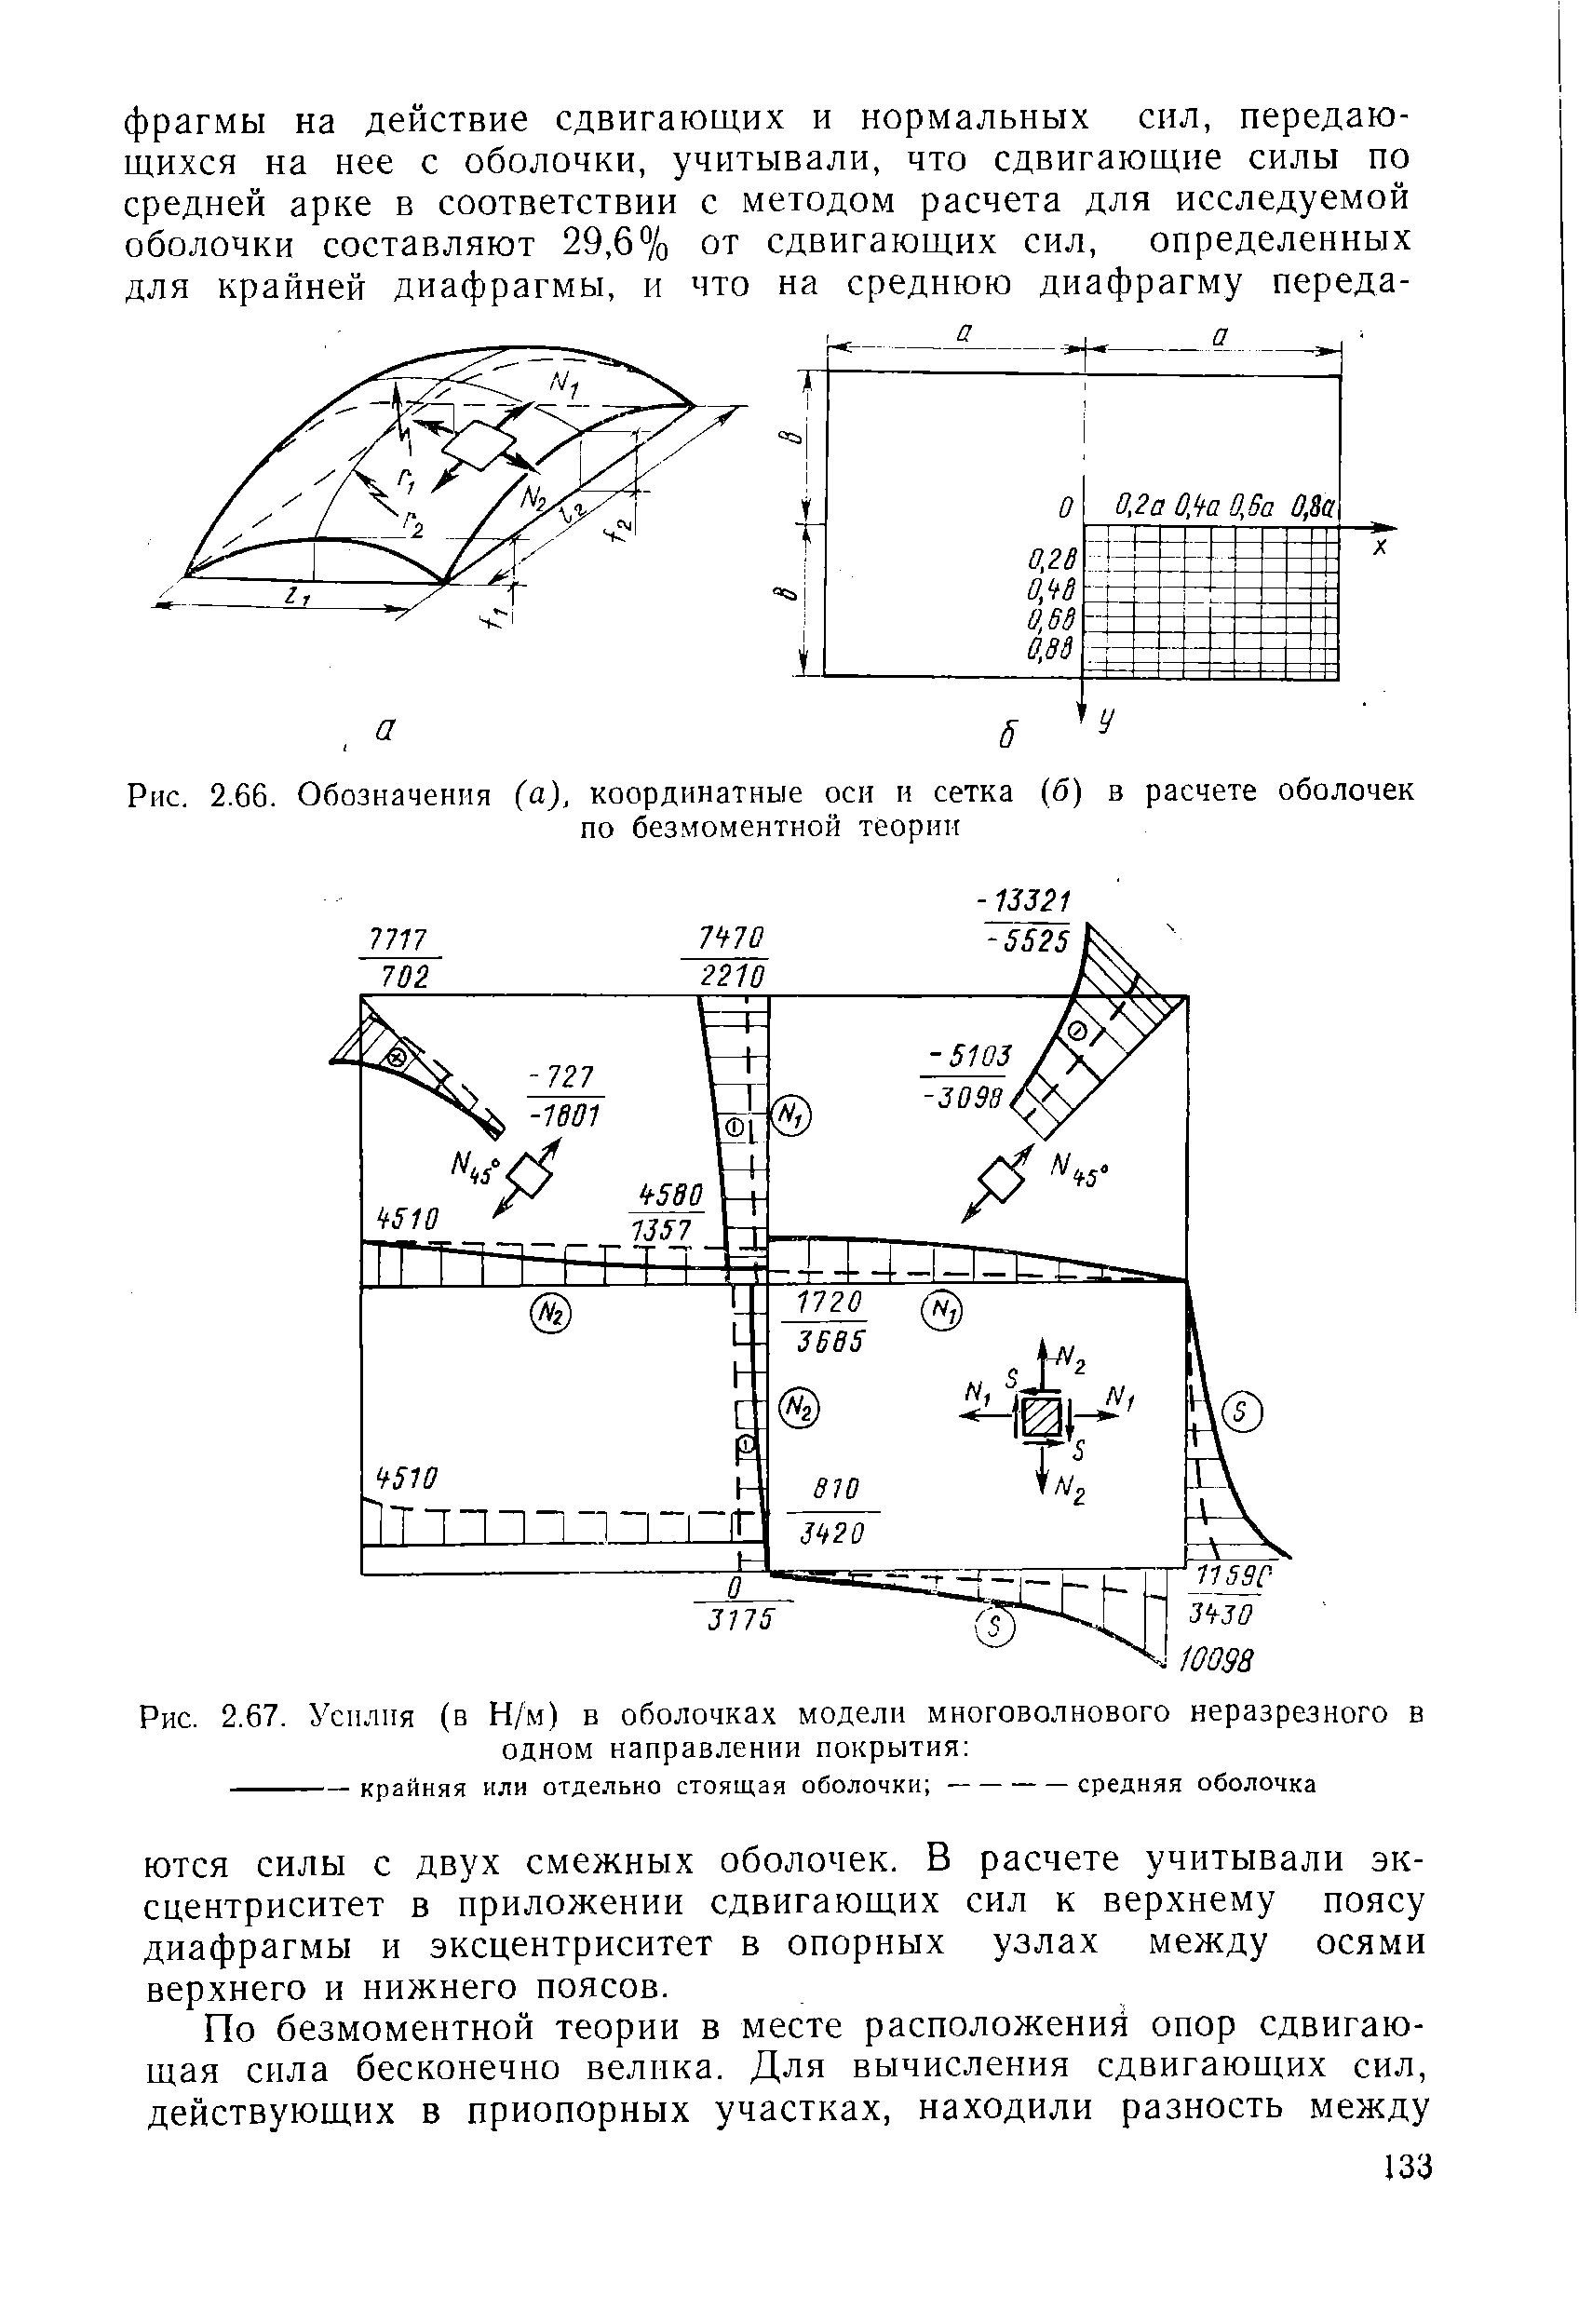 Рис. 2.66. Обозначения (а), координатные оси и сетка (б) в расчете оболочек
